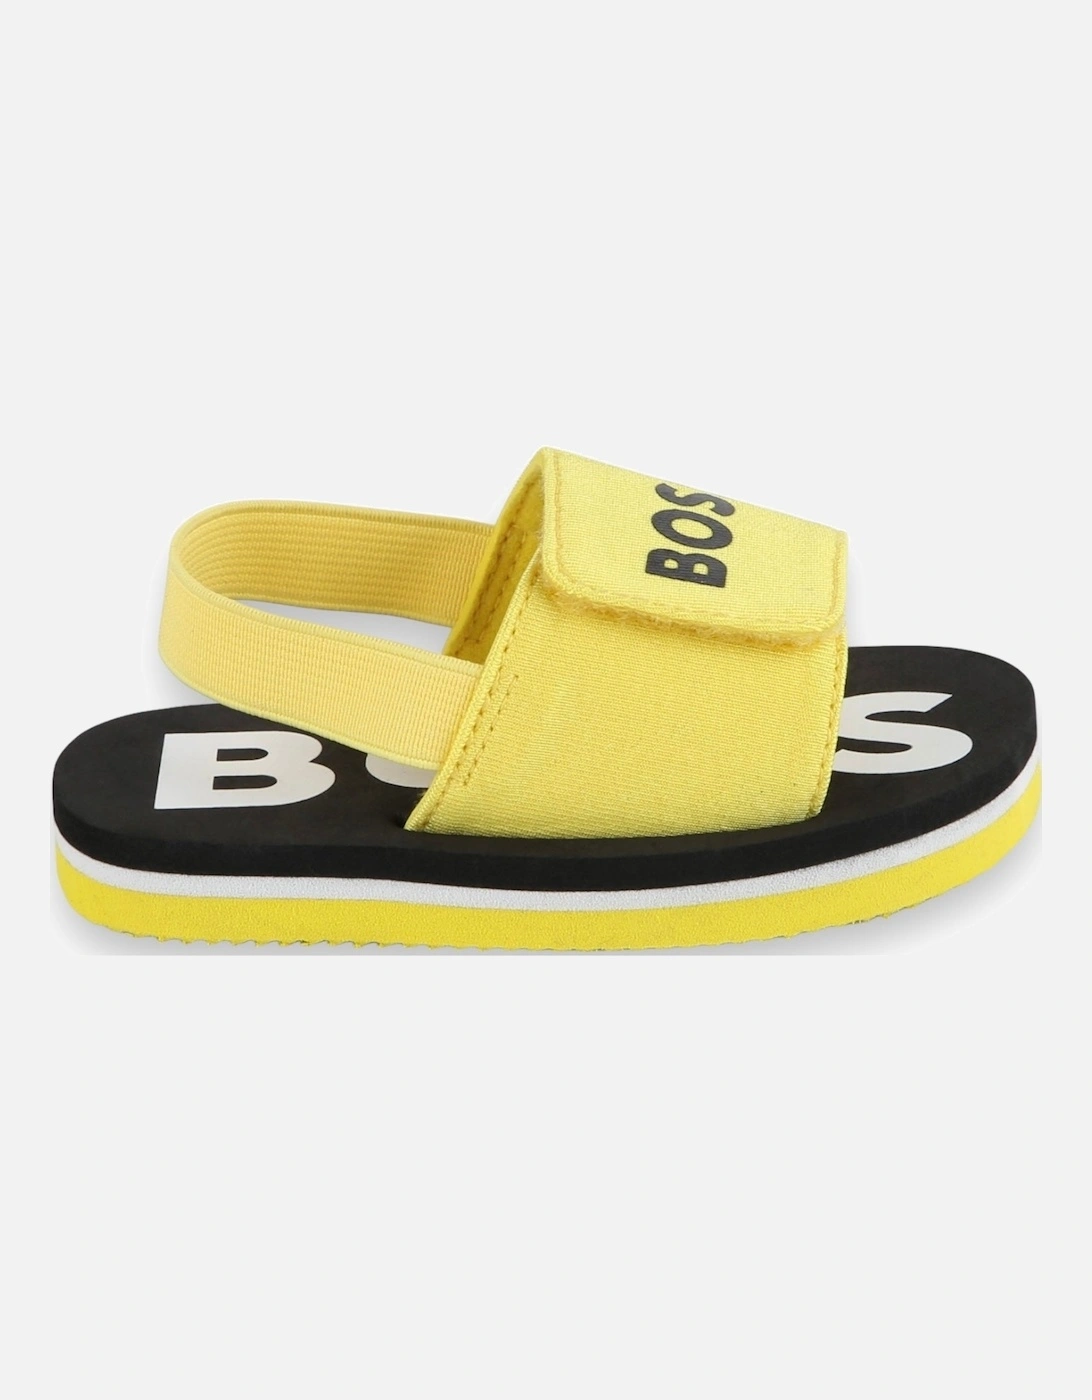 Yellow Sliders